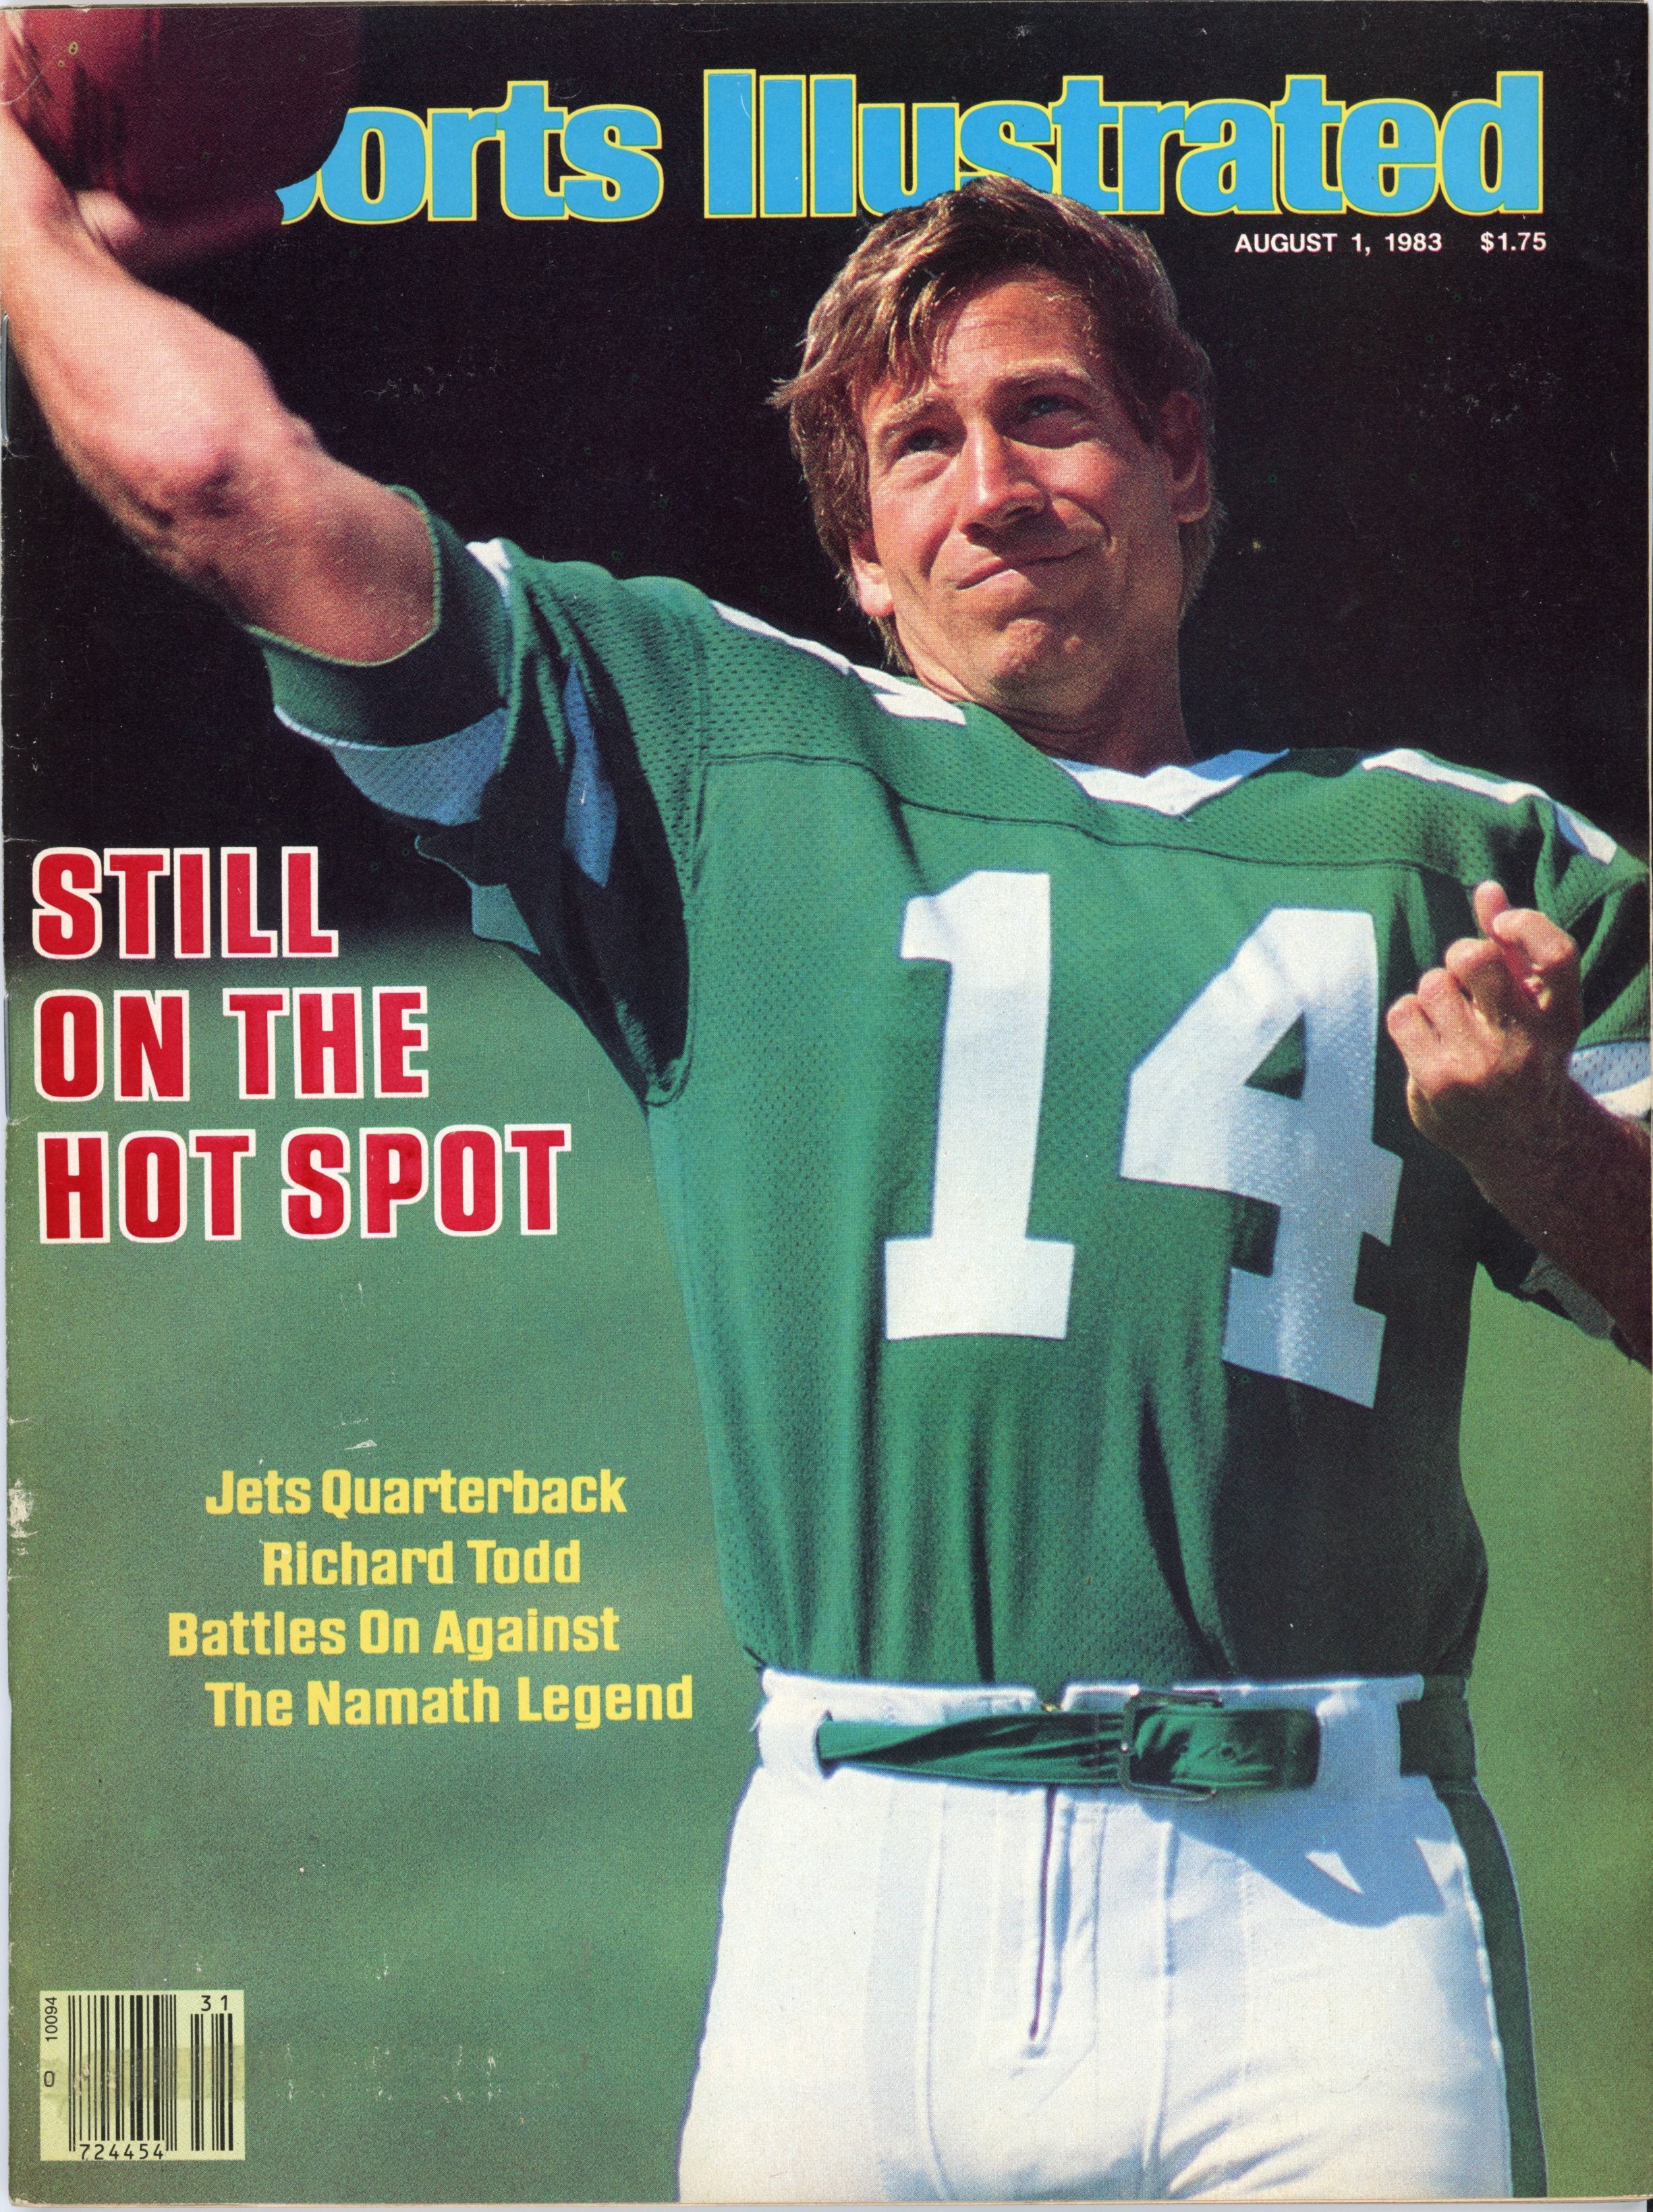 Richard Todd NY Jets “Still on the Hot Spot” 8/1/83 EX MLR